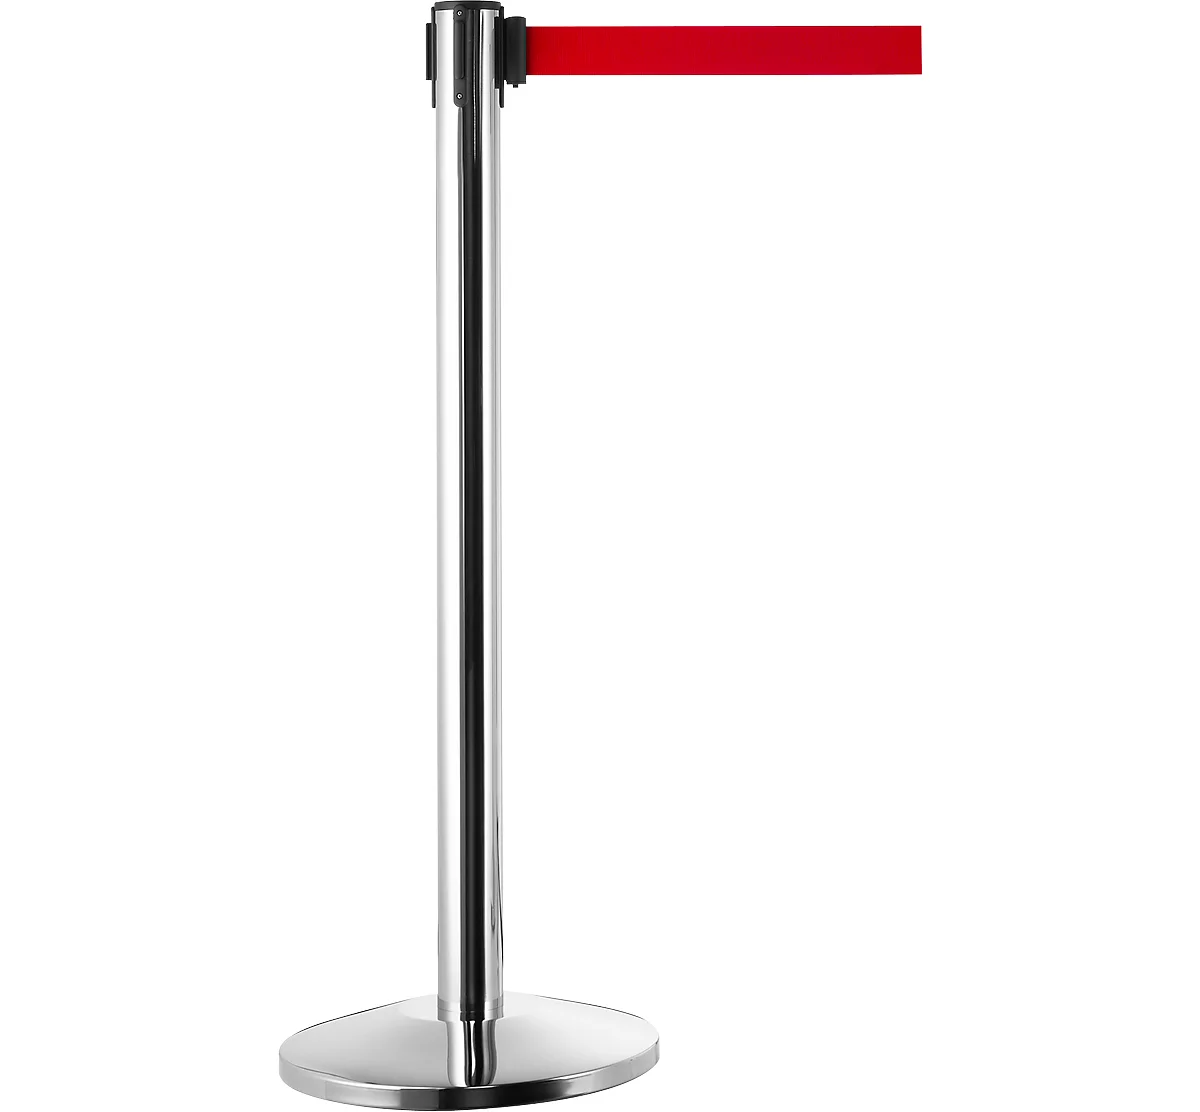 Poste de barrera, plata cromada, cinta roja, extensible hasta 2 m, autorretráctil, con freno, Ø 360 x H 1040 mm, metal cromado